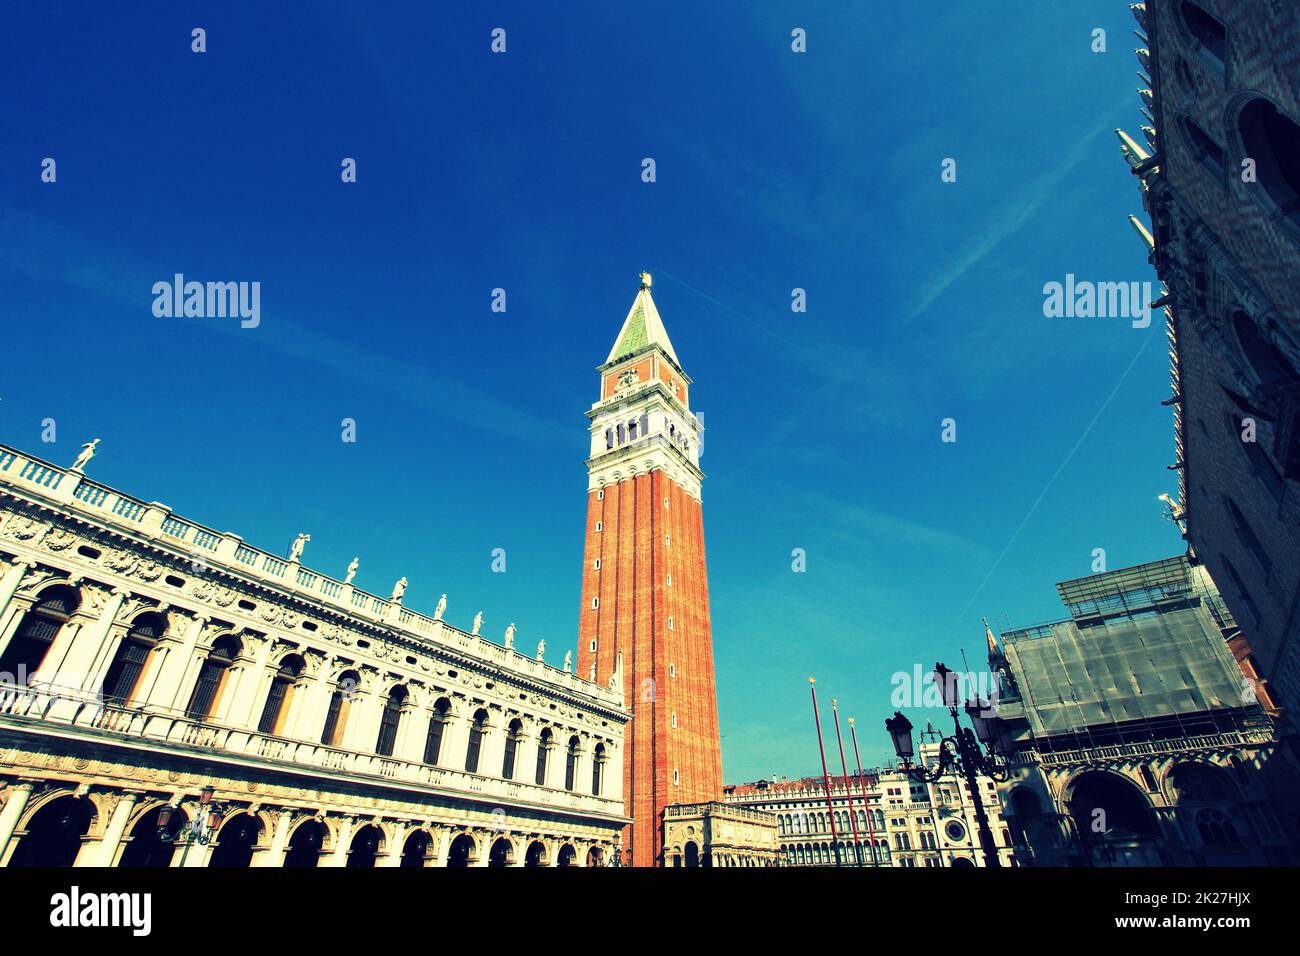 Le Campanile de San Marco et beau palais de la Piazza San Marco, la Place Saint-Marc, Venise, Italie Banque D'Images